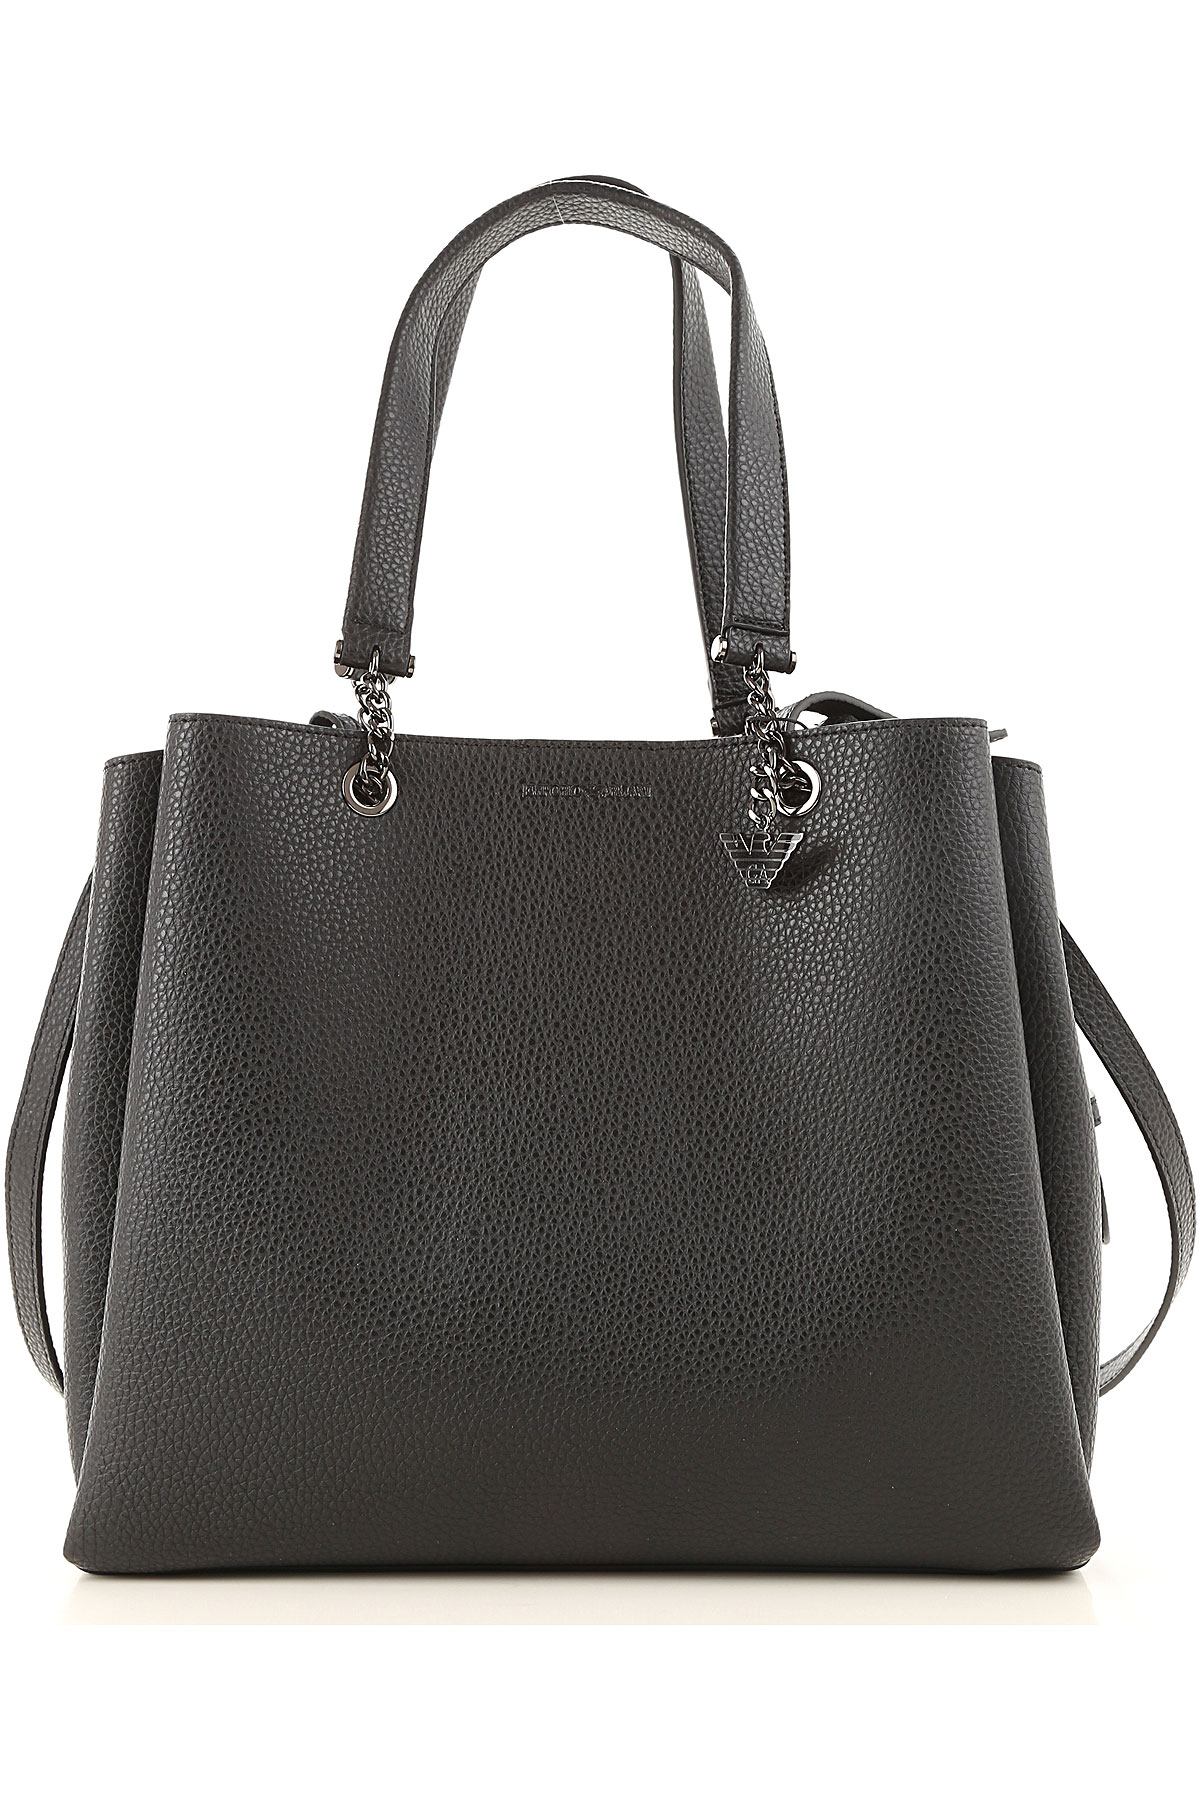 Handbags Emporio Armani, Style code: y3d158-yfn6j-81386